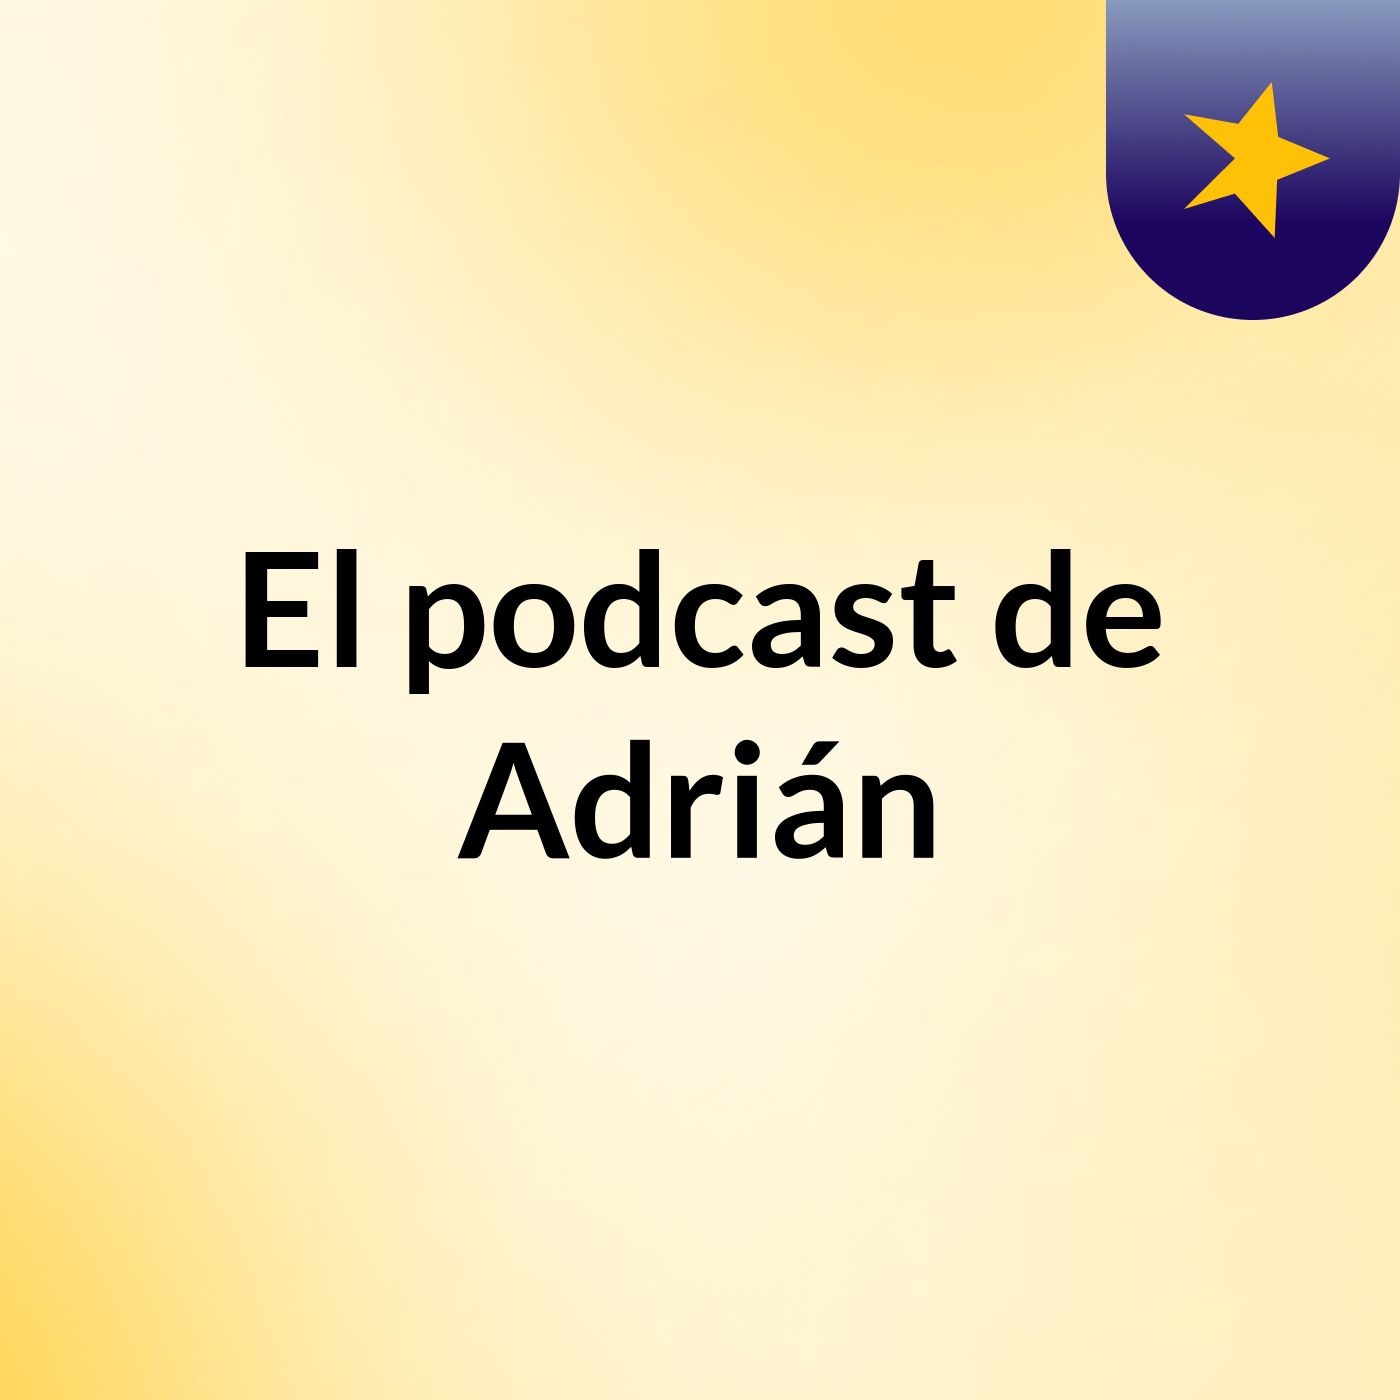 Episodio 4 - El podcast de Adrián